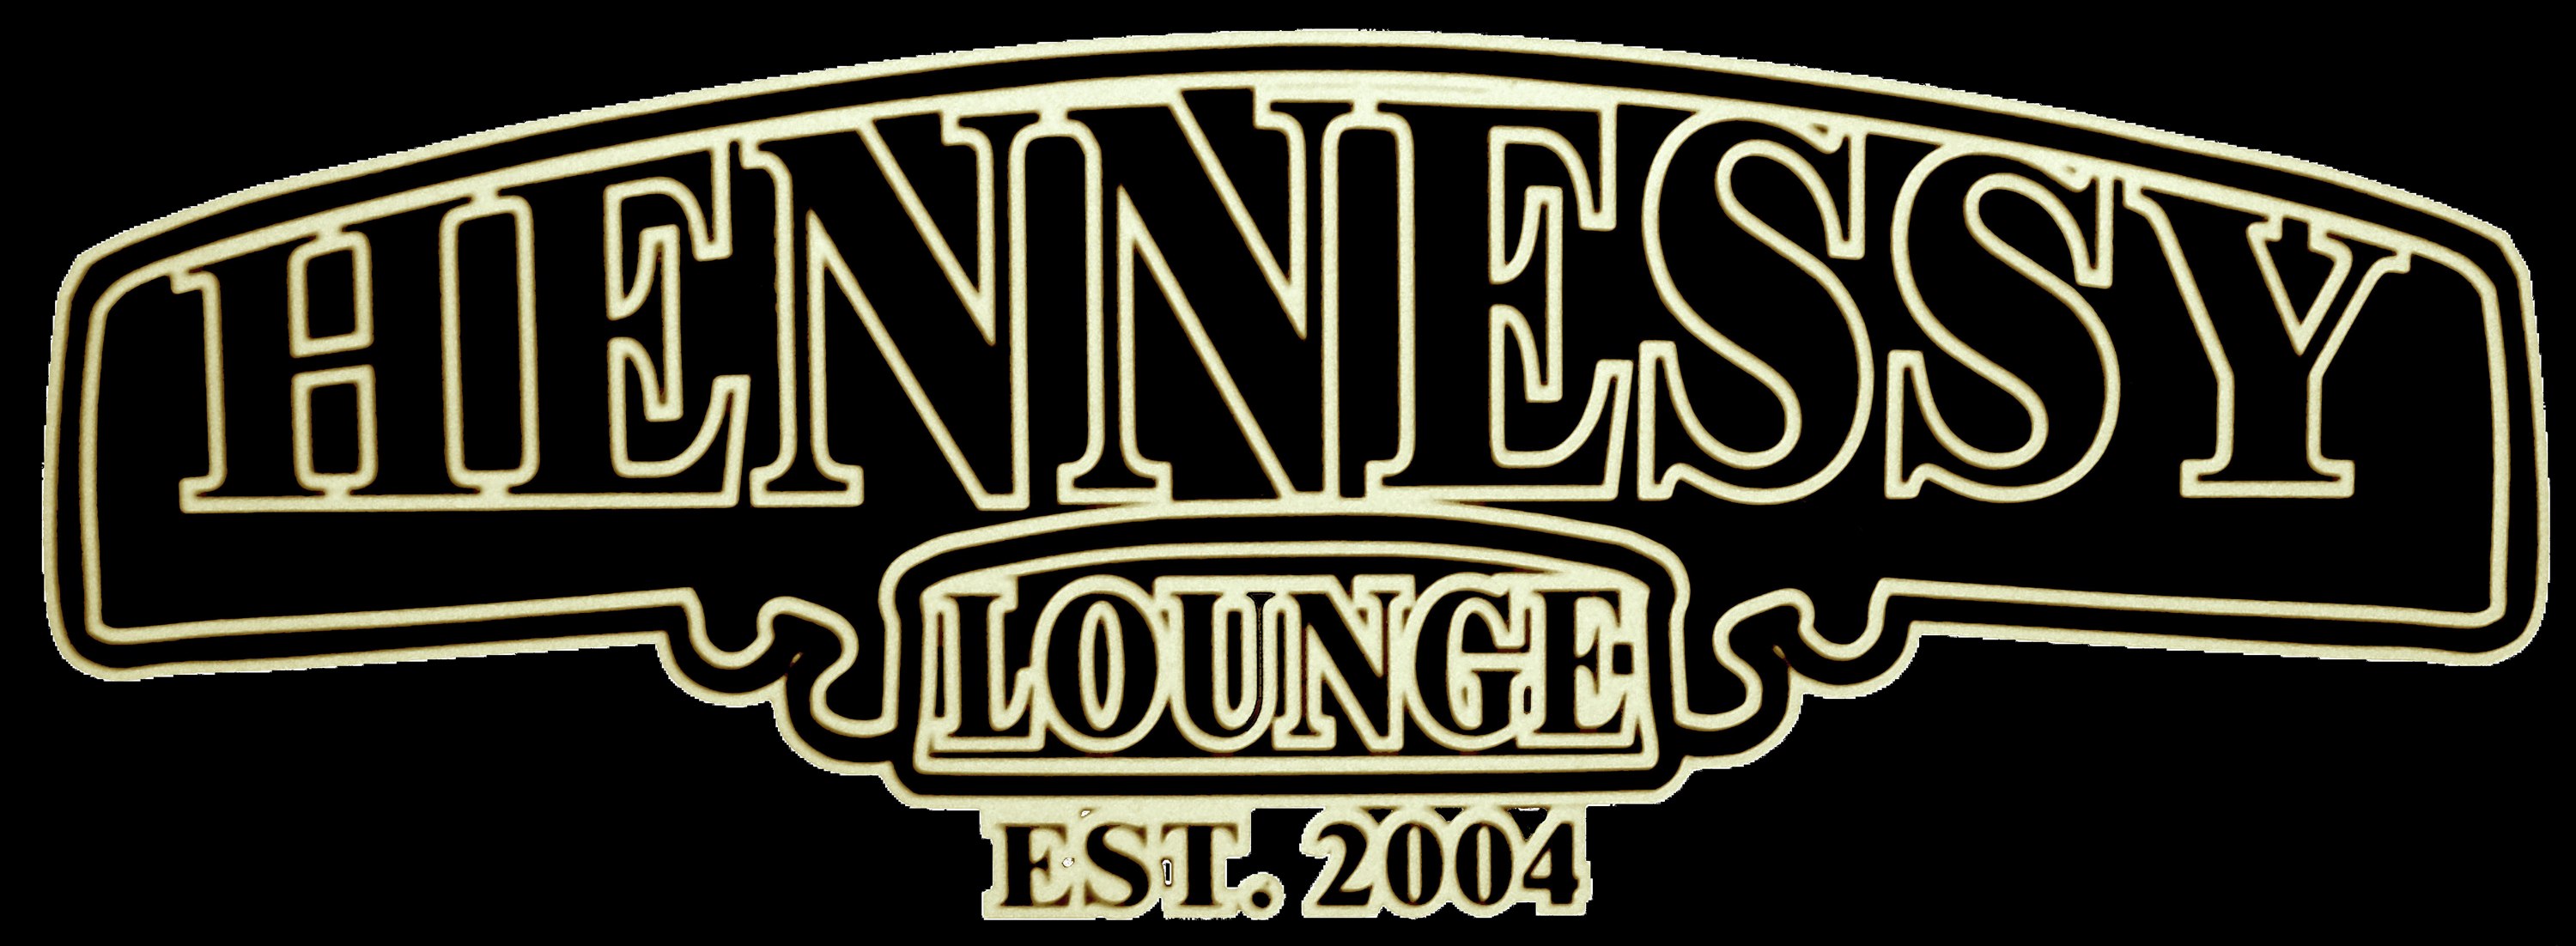 Hennessy Logo Wallpaper Database